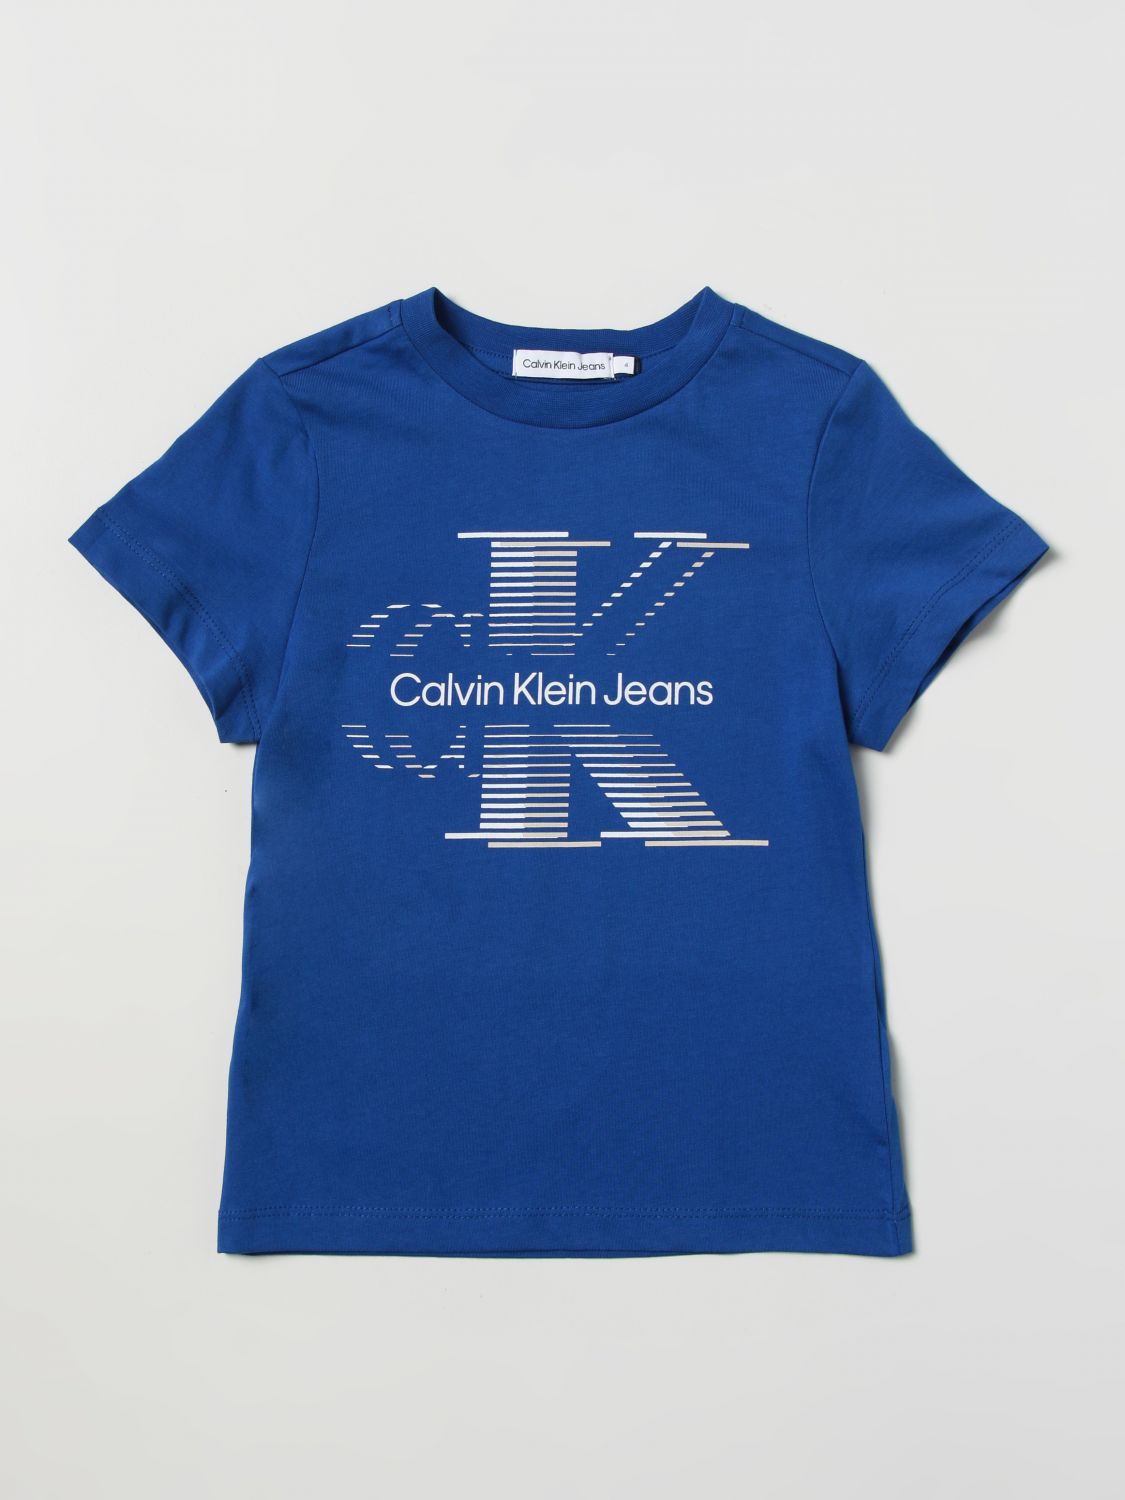 Ithaca Boodschapper Forensische geneeskunde CALVIN KLEIN JEANS: t-shirt for boys - Blue | Calvin Klein Jeans t-shirt  IB0IB01577 online on GIGLIO.COM